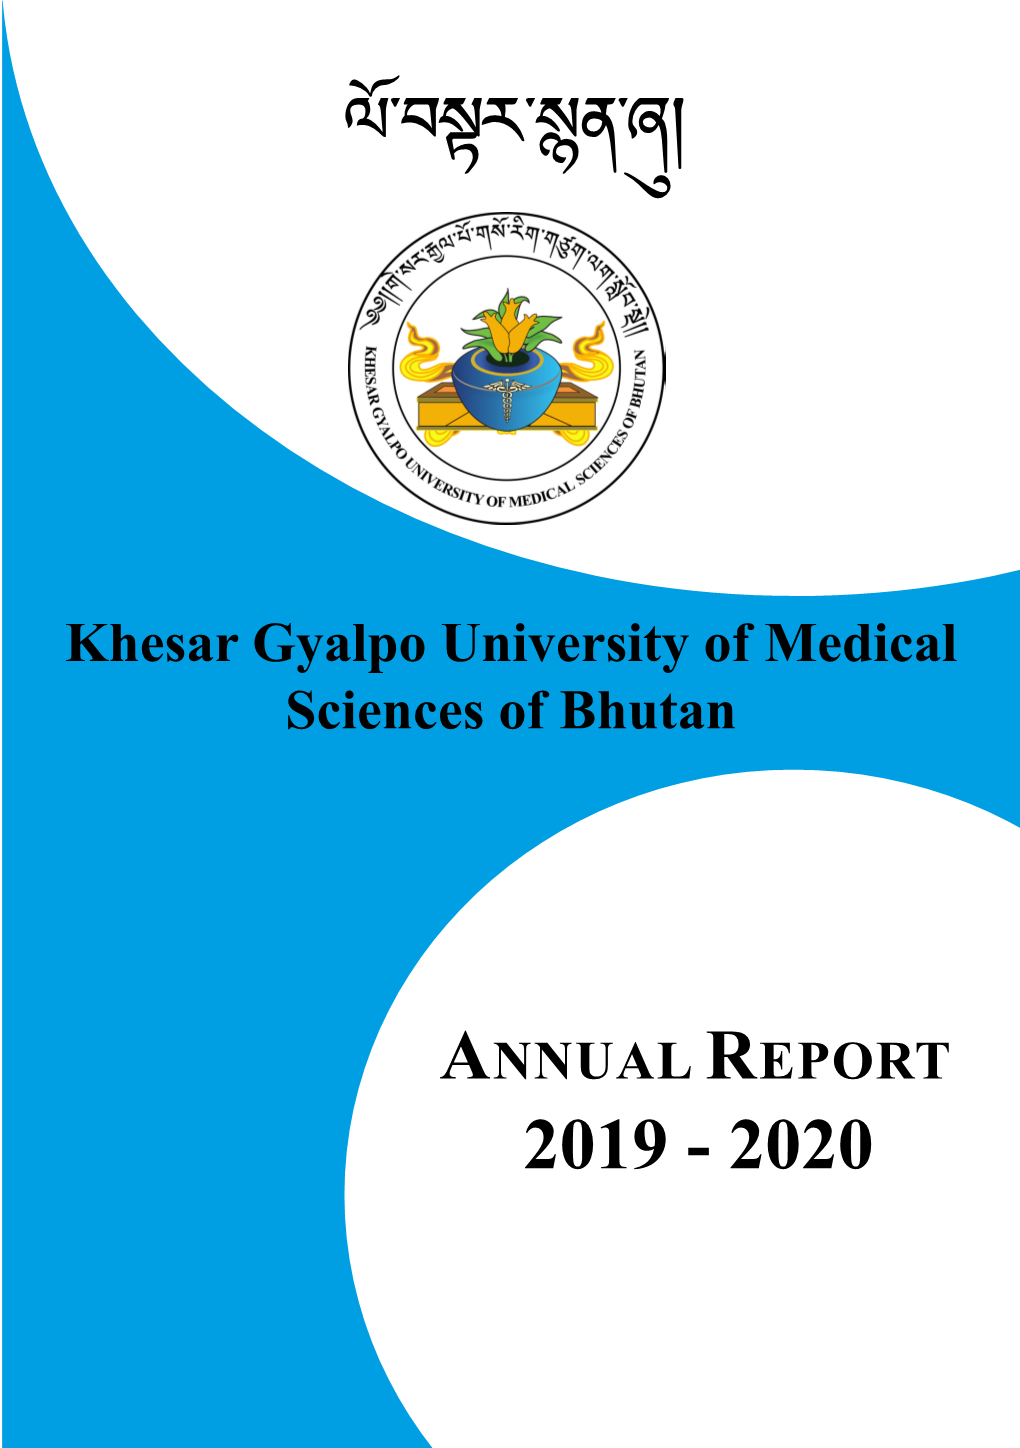 Annual Report 2019-2020 Annual Report 2019-2020